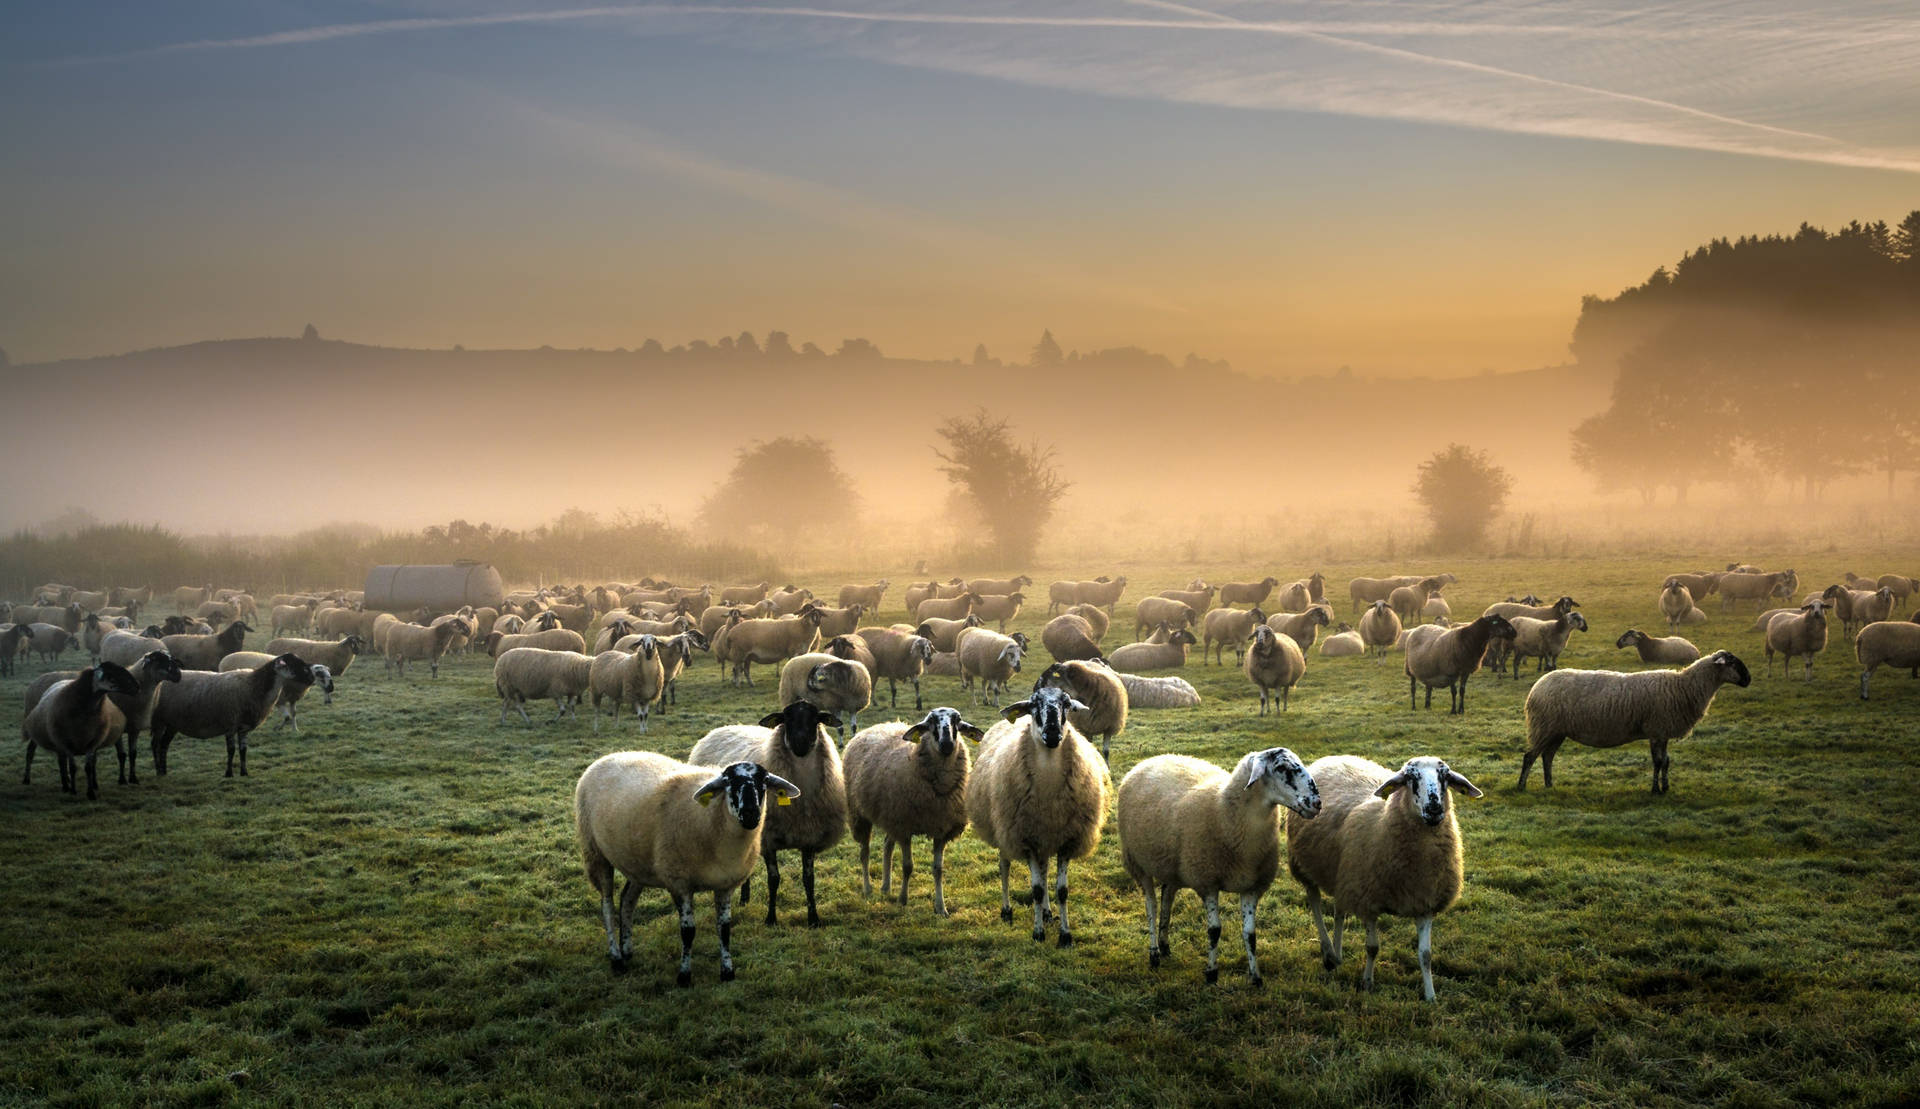 Sheep In Misty Grass Field